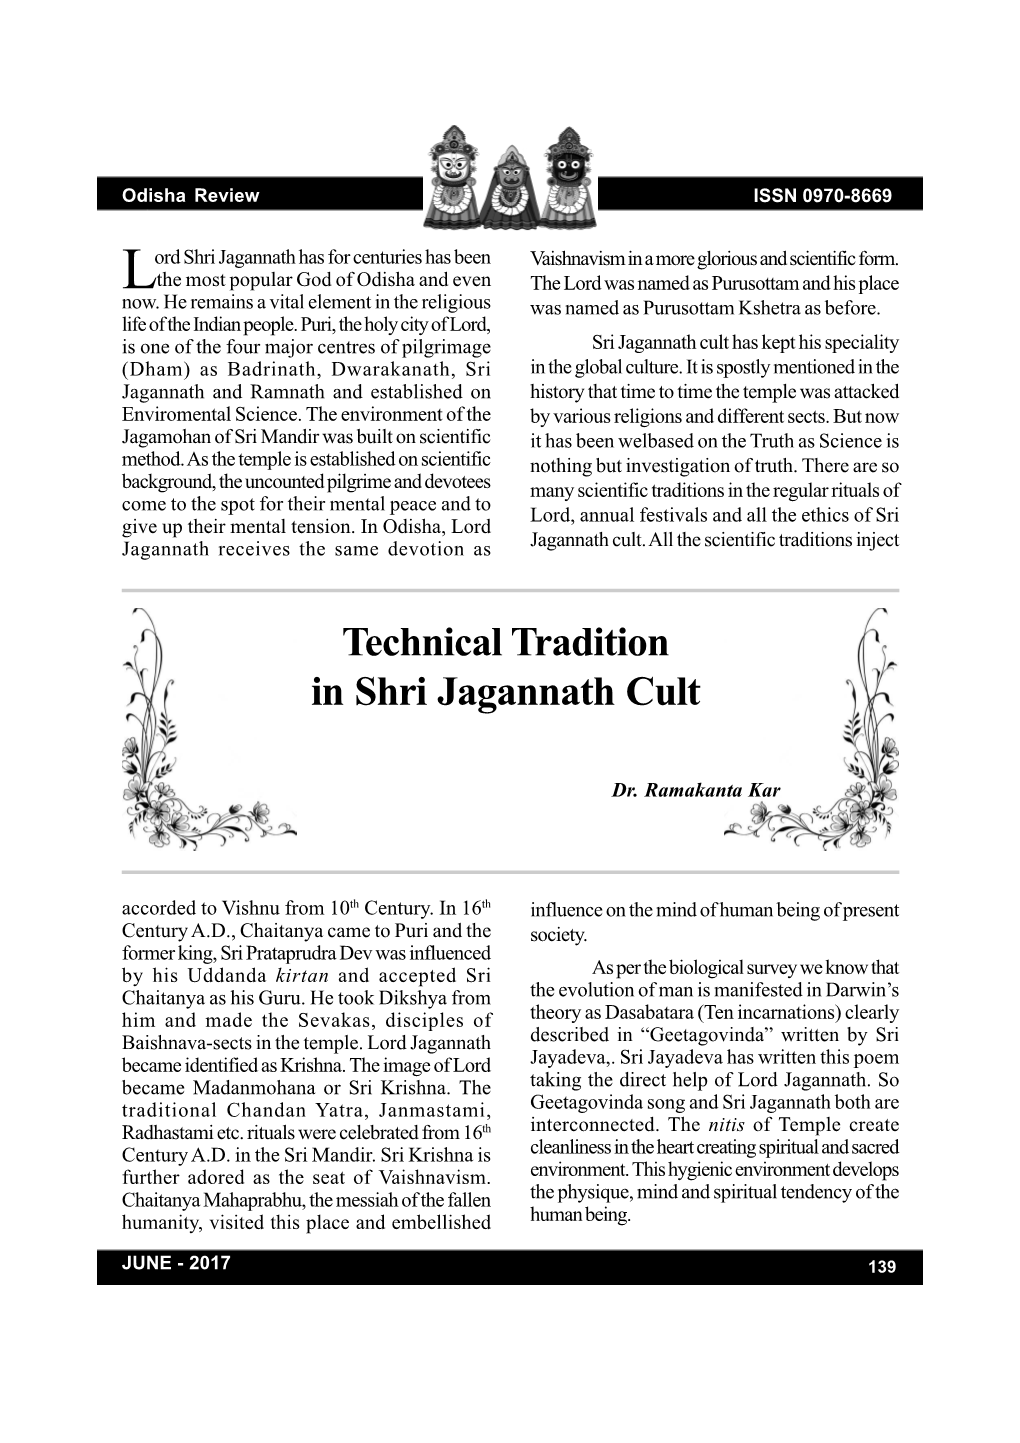 Technical Tradition in Shri Jagannath Cult